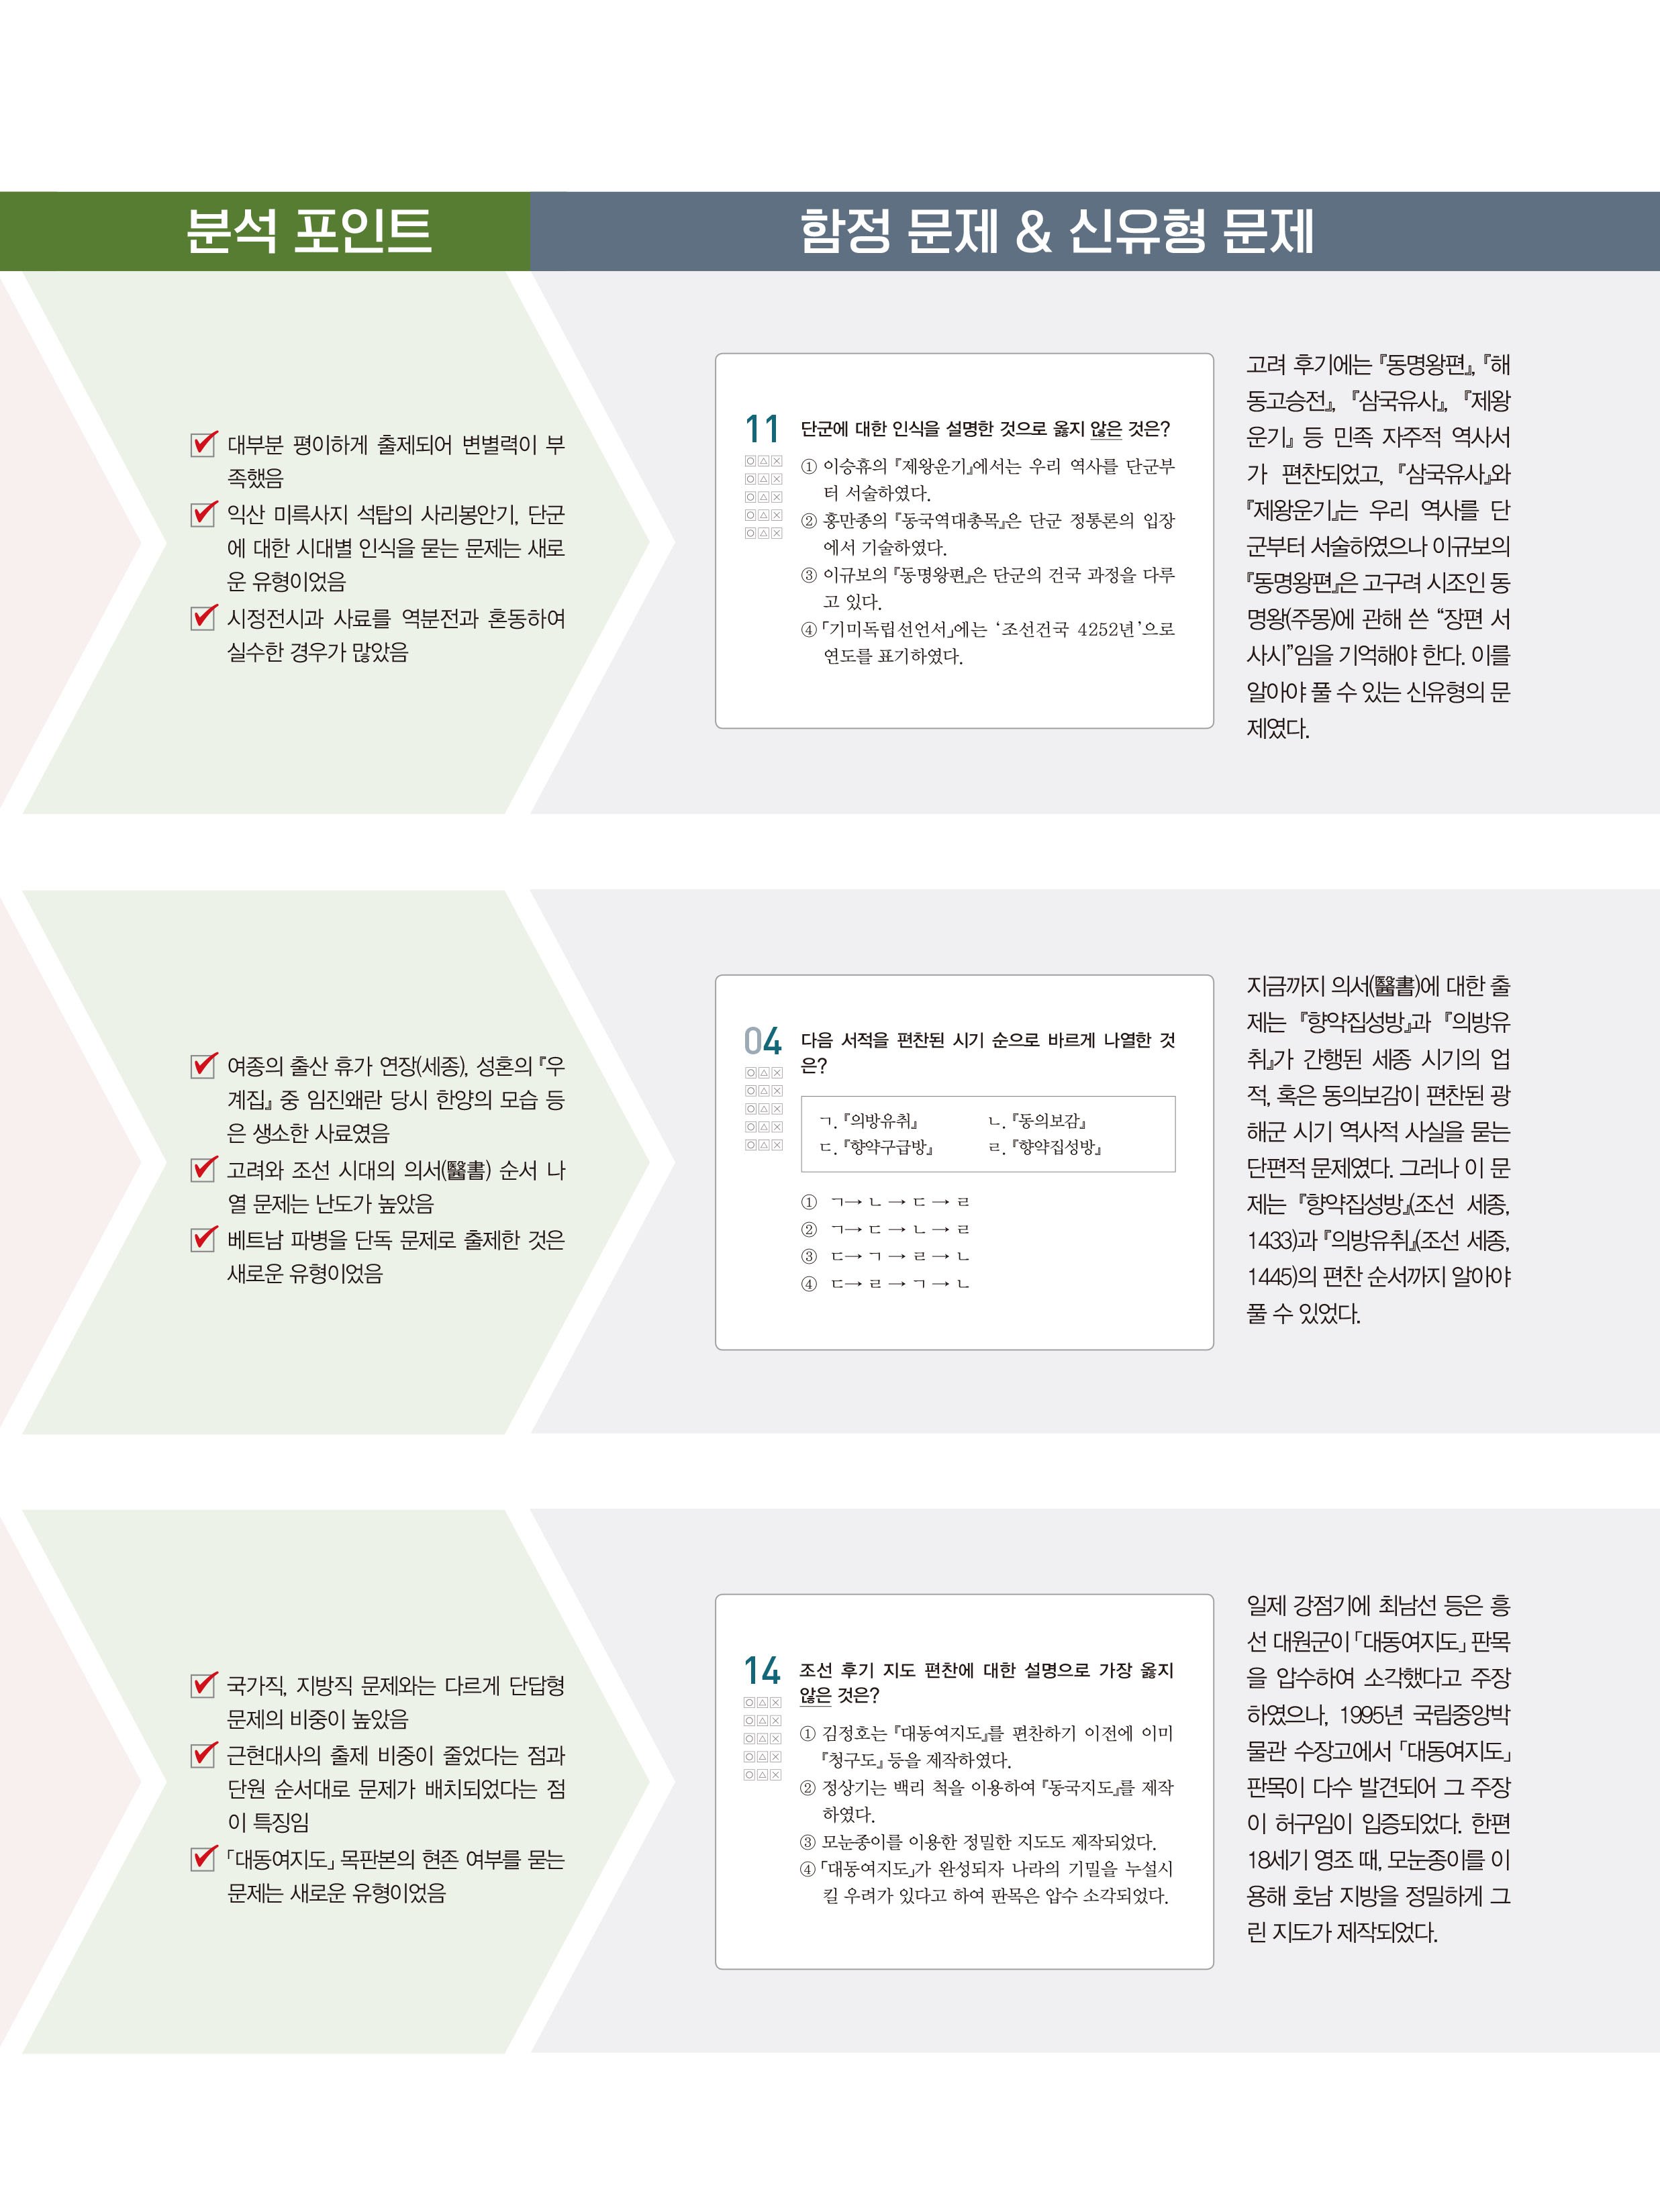 한국사 시험 분석 포인트.jpg